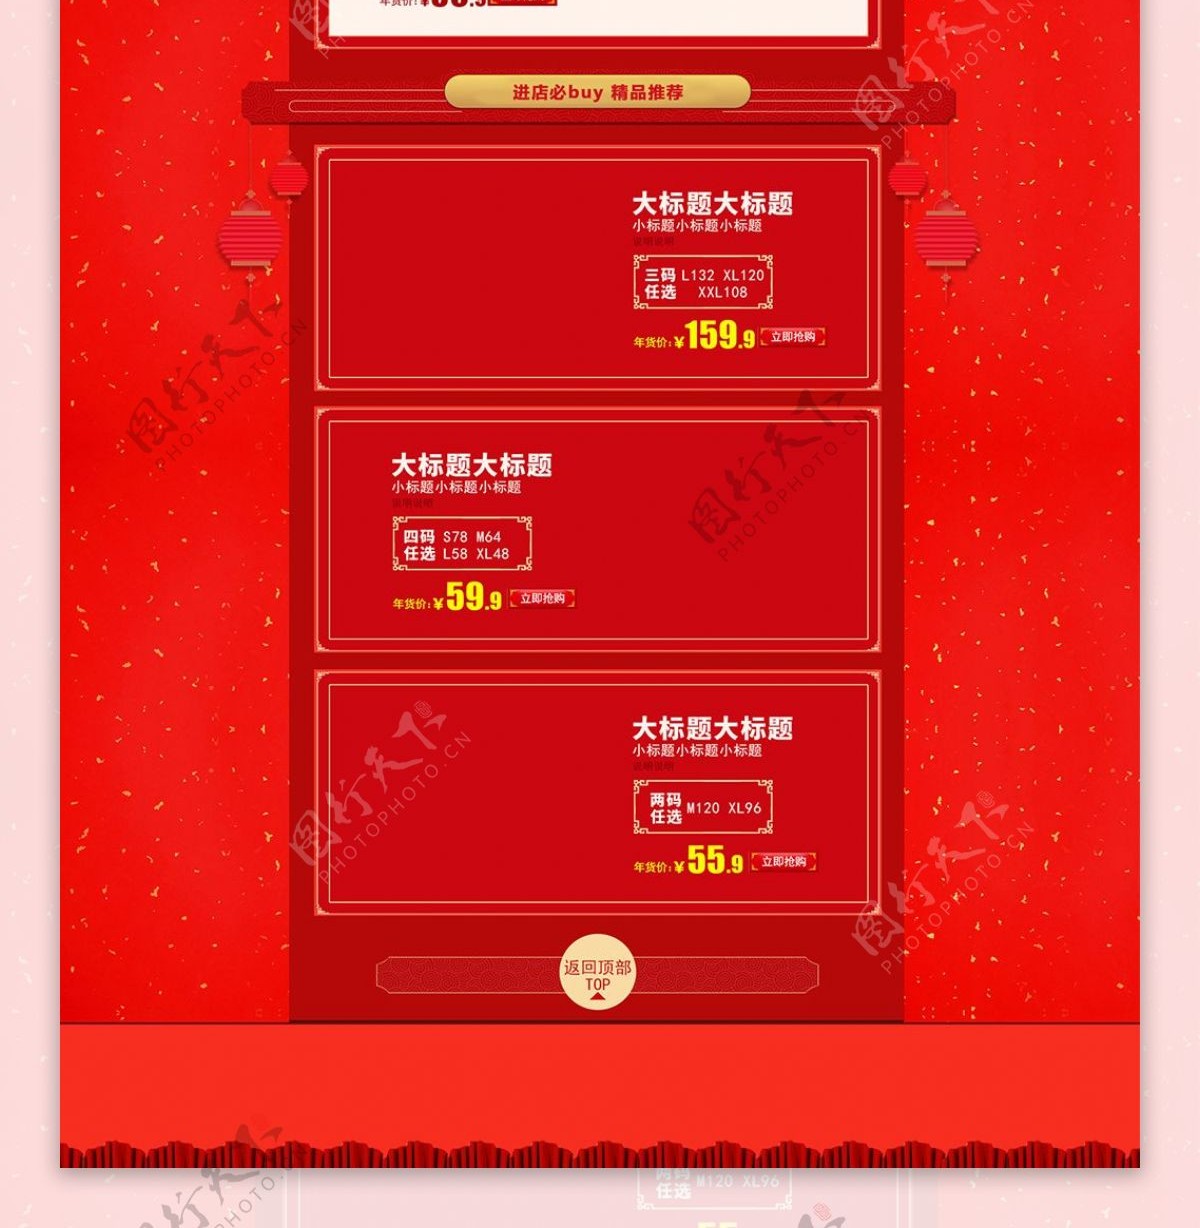 红色电商中国风年货节首页装修模板PSD